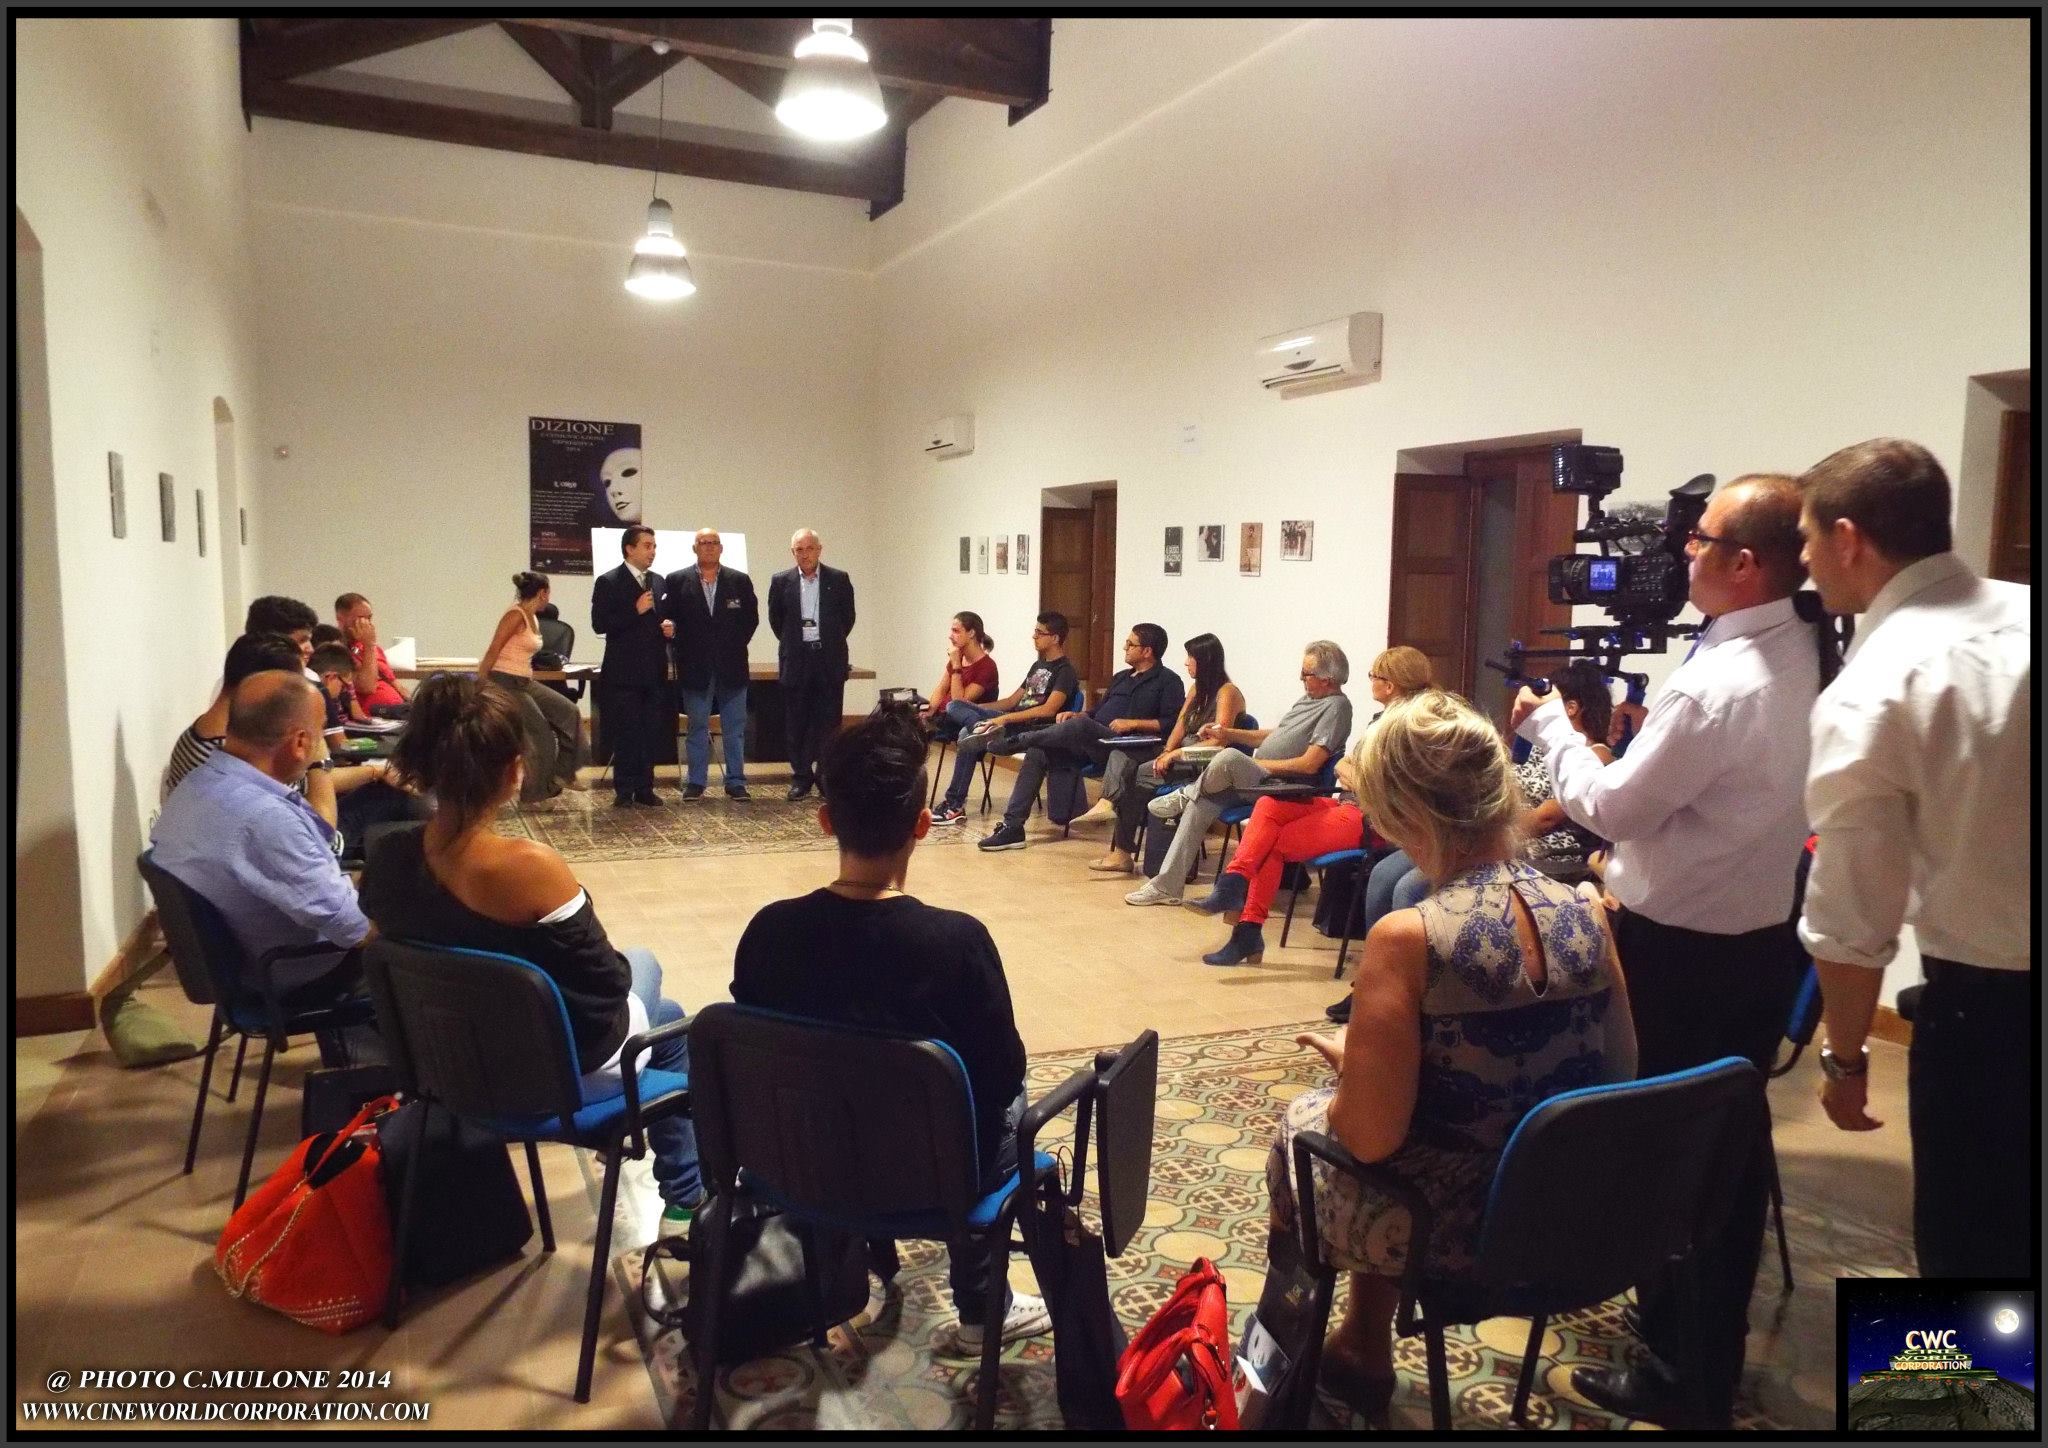 Canicattì, Cineworldcorporation: Inaugurato da una grande folla il corso di Dizione Espressiva 2014